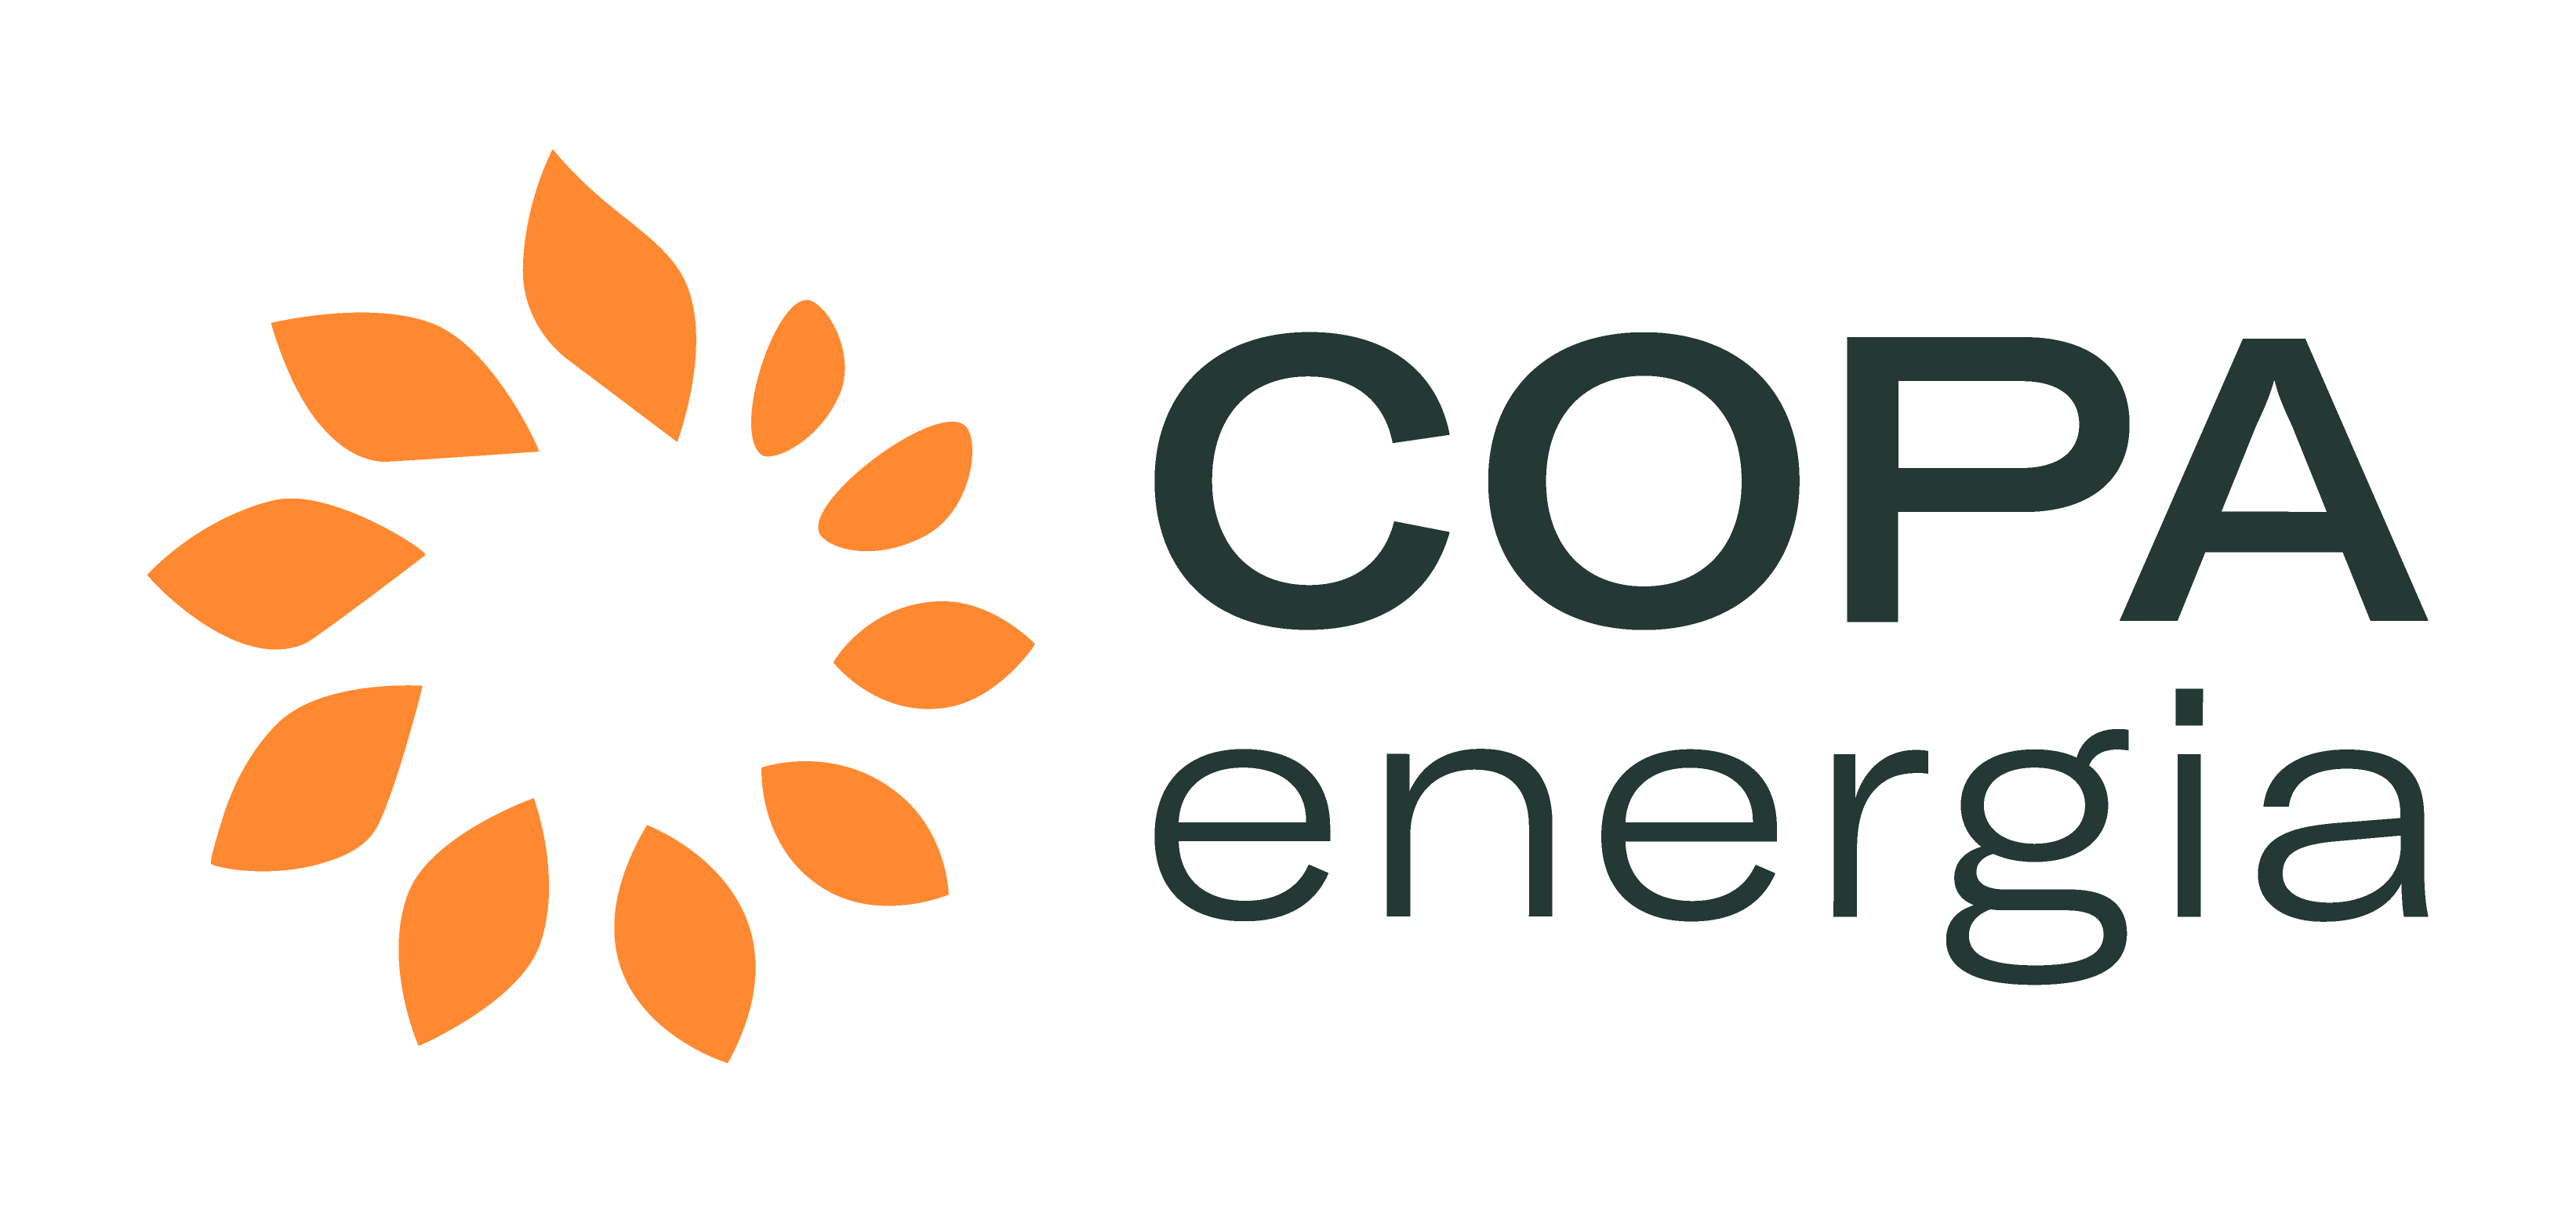 Energia da sustentabilidade - Copel - Pura Energia